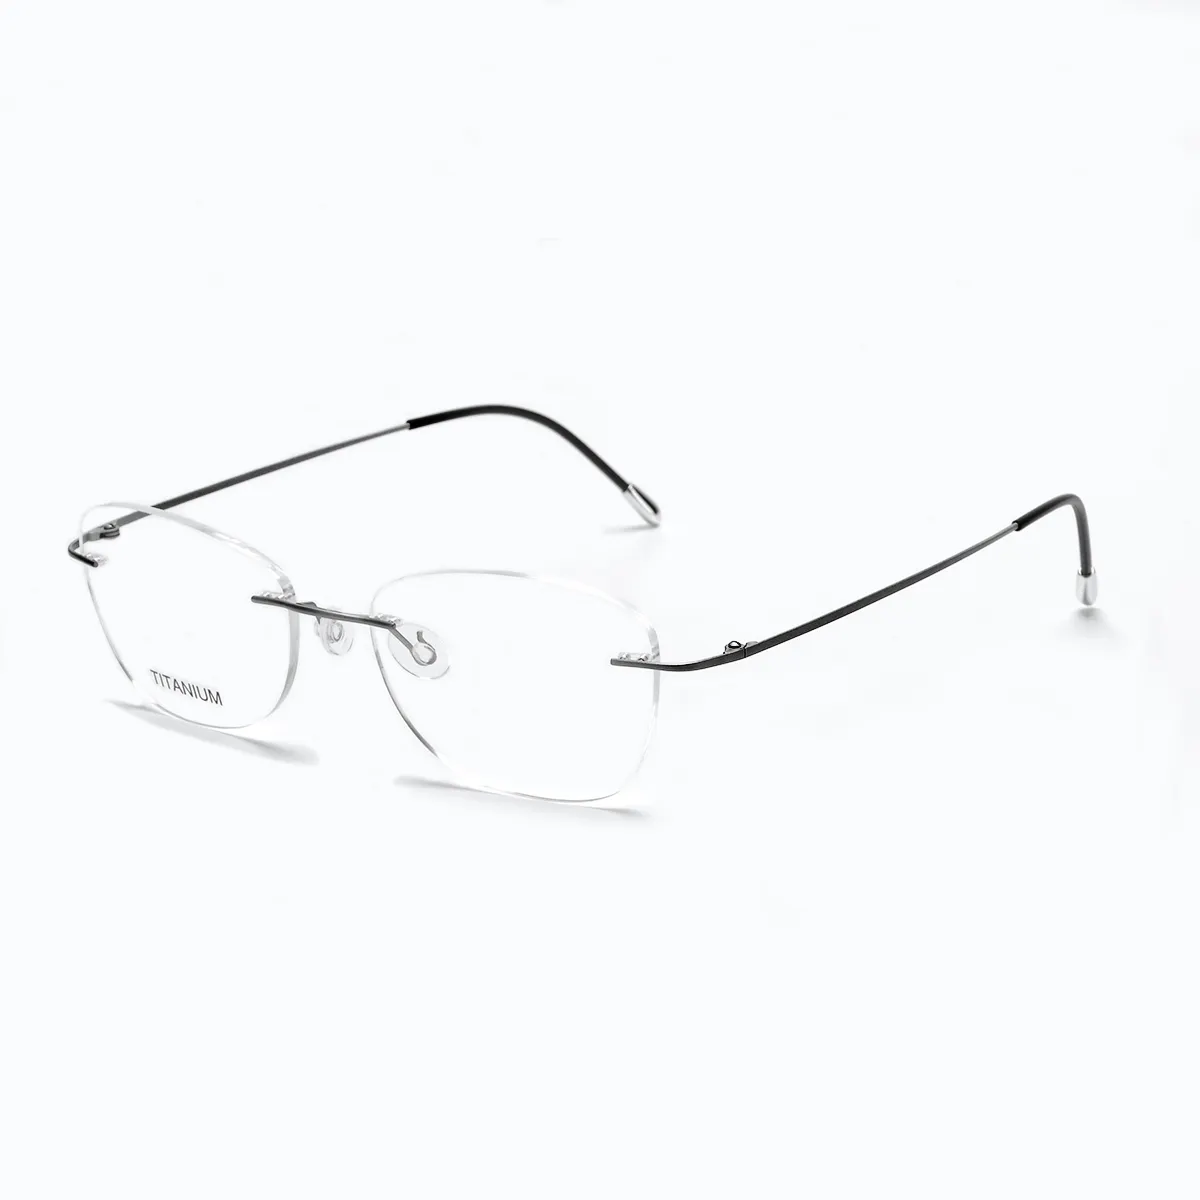 Bingkai Kacamata Optik Mewah Tanpa Bingkai, Bingkai Kacamata Titanium Persegi Panjang